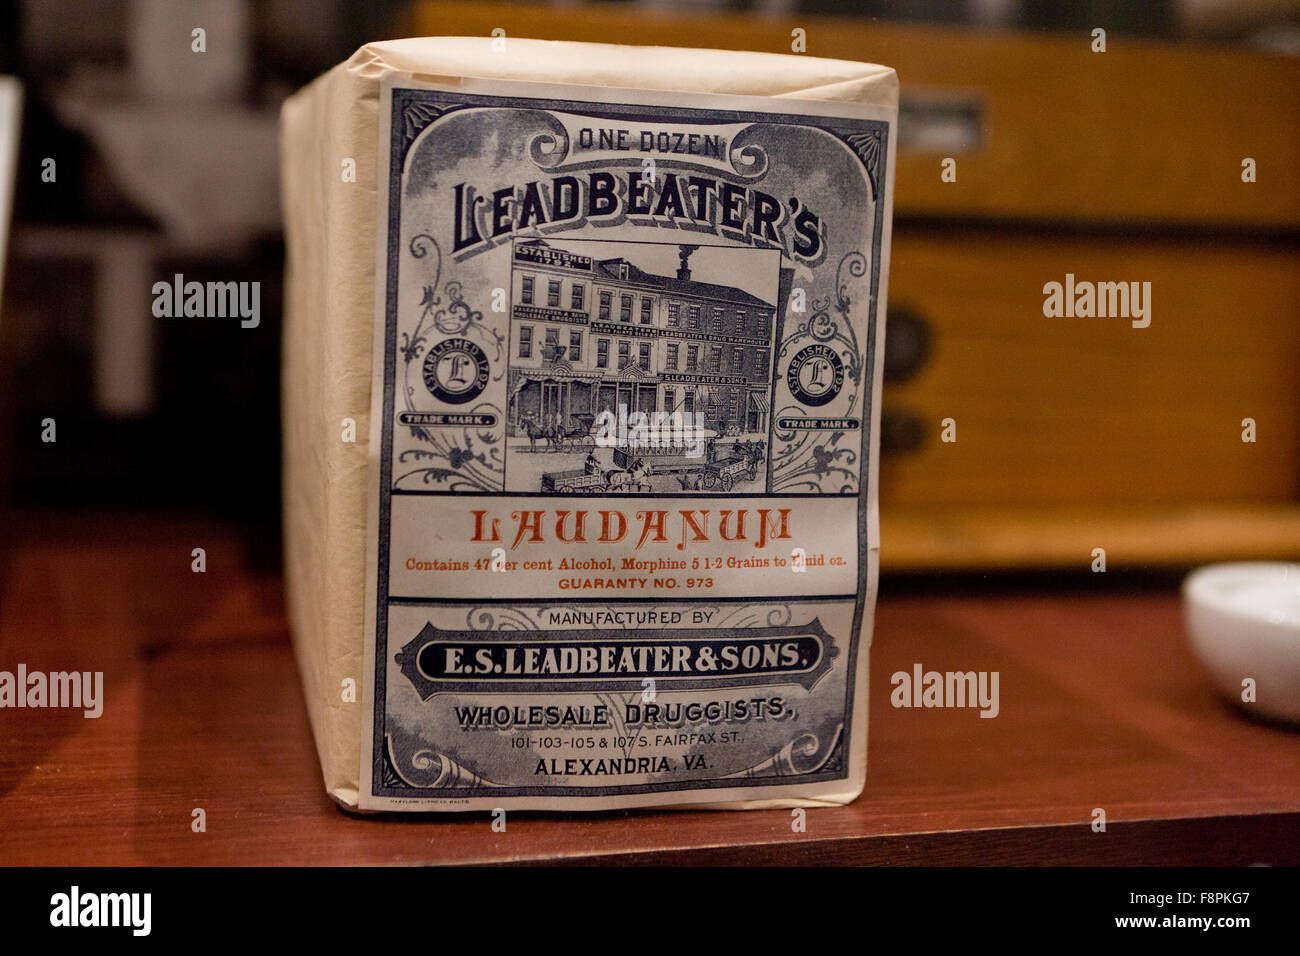 Leadbeater Laudanum del paquete, analgésico comercializado en los EE.UU., a finales de 1800 a principios de 1900 - EE.UU. Foto de stock